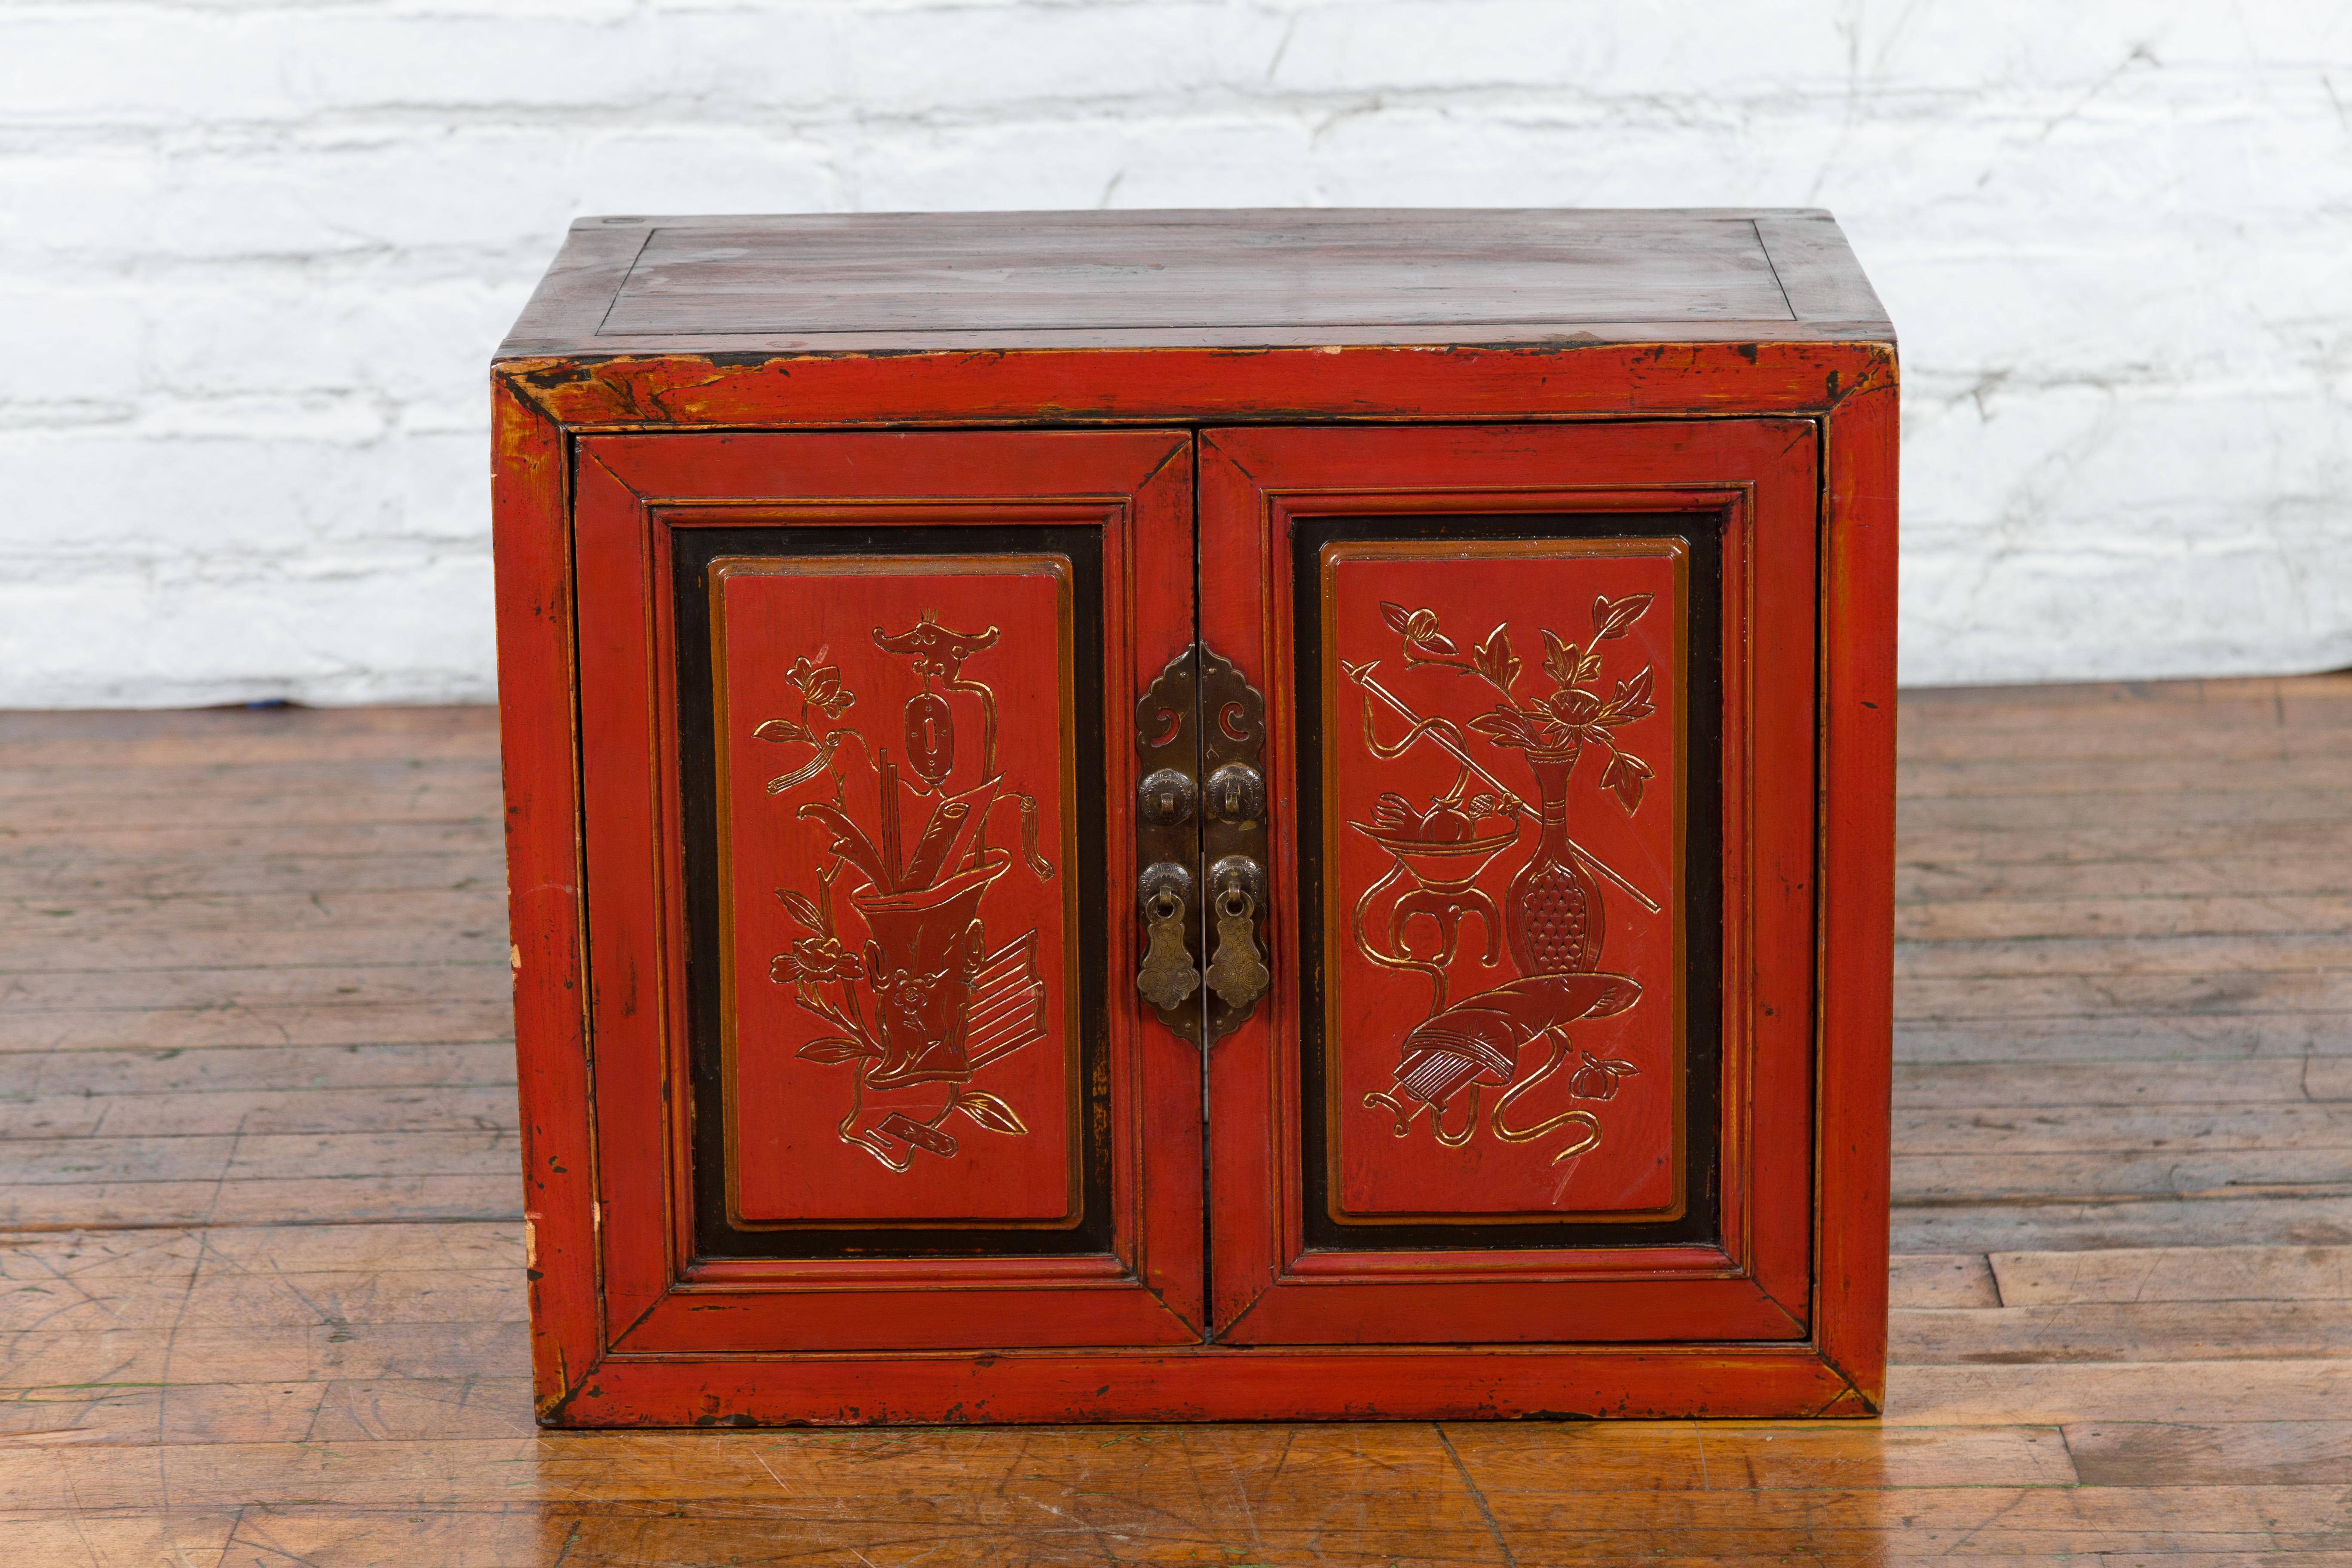 Cabinet chinois en laque rouge de la dynastie Qing, datant du XIXe siècle, avec des portes sculptées à la main. Créée en Chine pendant la dynastie Qing, cette armoire présente une forme linéaire traditionnelle parfaitement mise en valeur par une